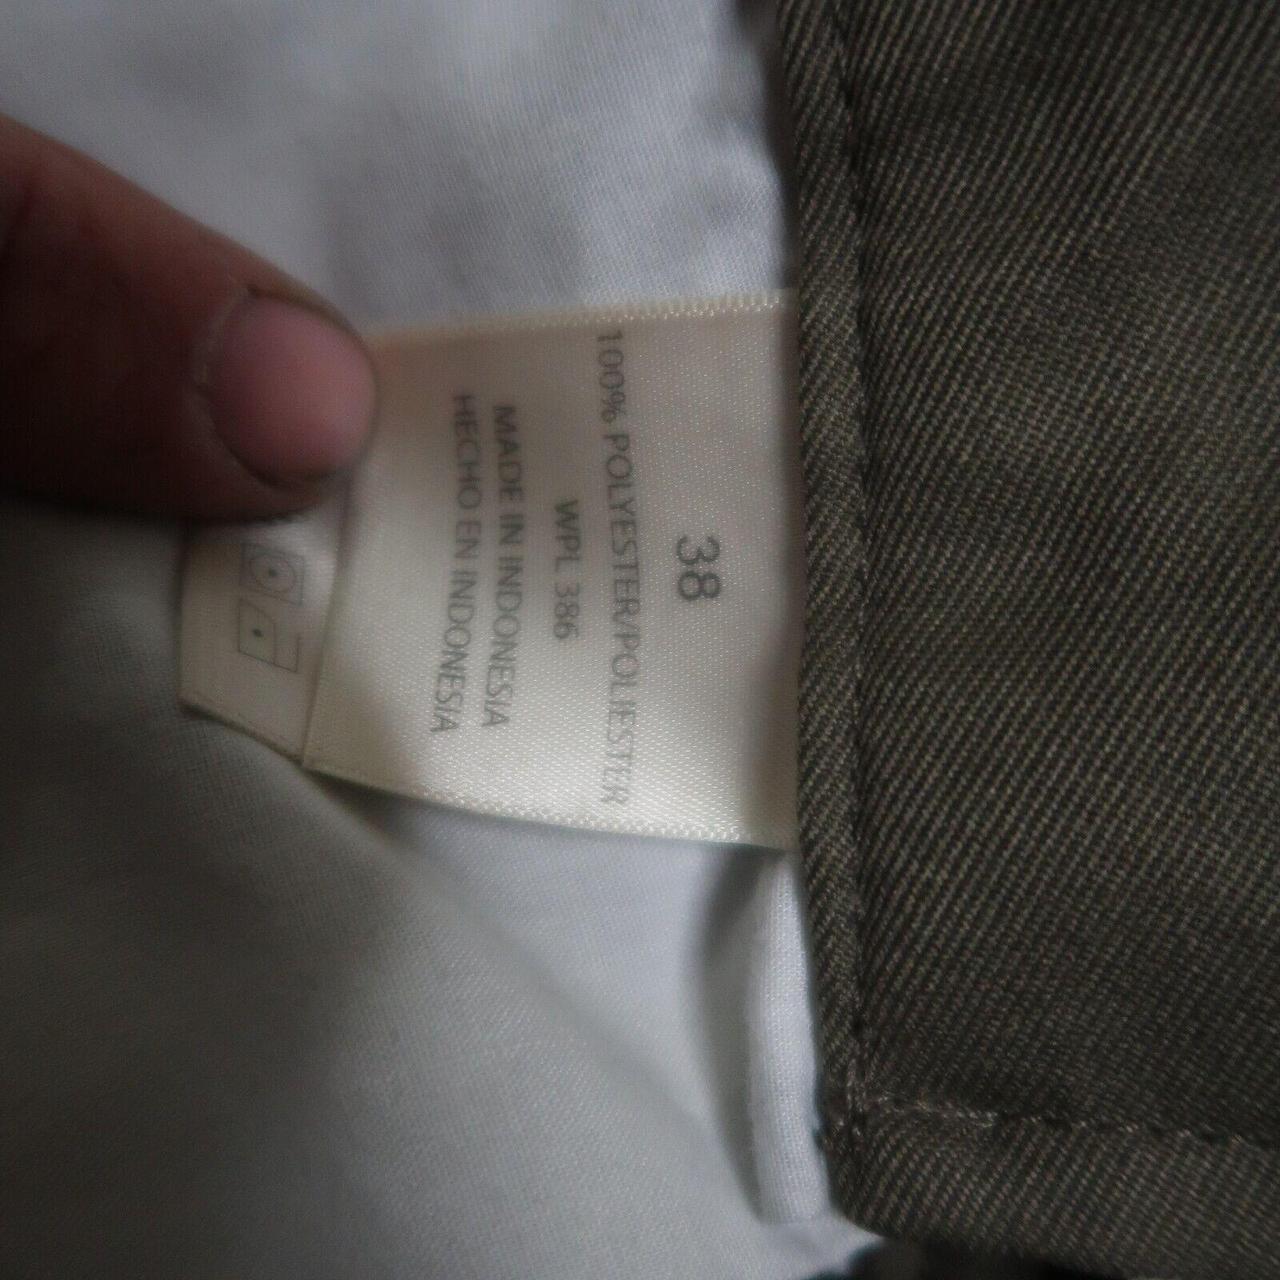 Product Image 3 - Haggar Chino Shorts Men's Size